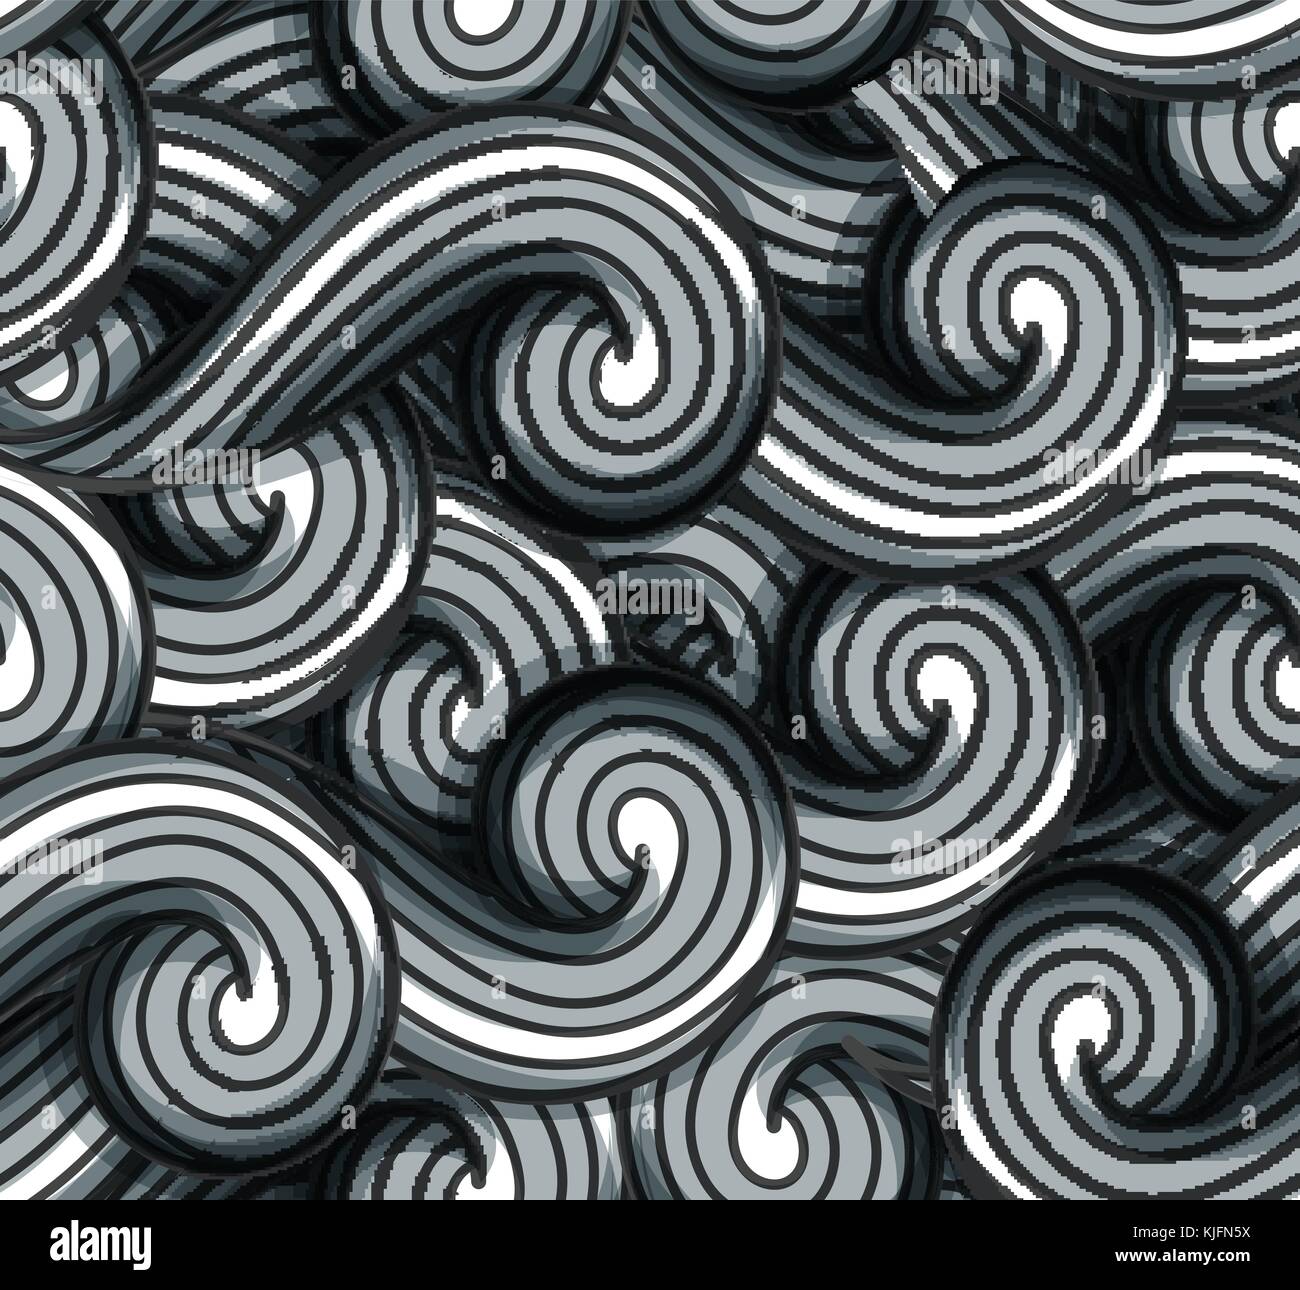 Zusammenfassung nahtlose Vektor Hintergrund, grau wellenförmige Muster. Stock Vektor